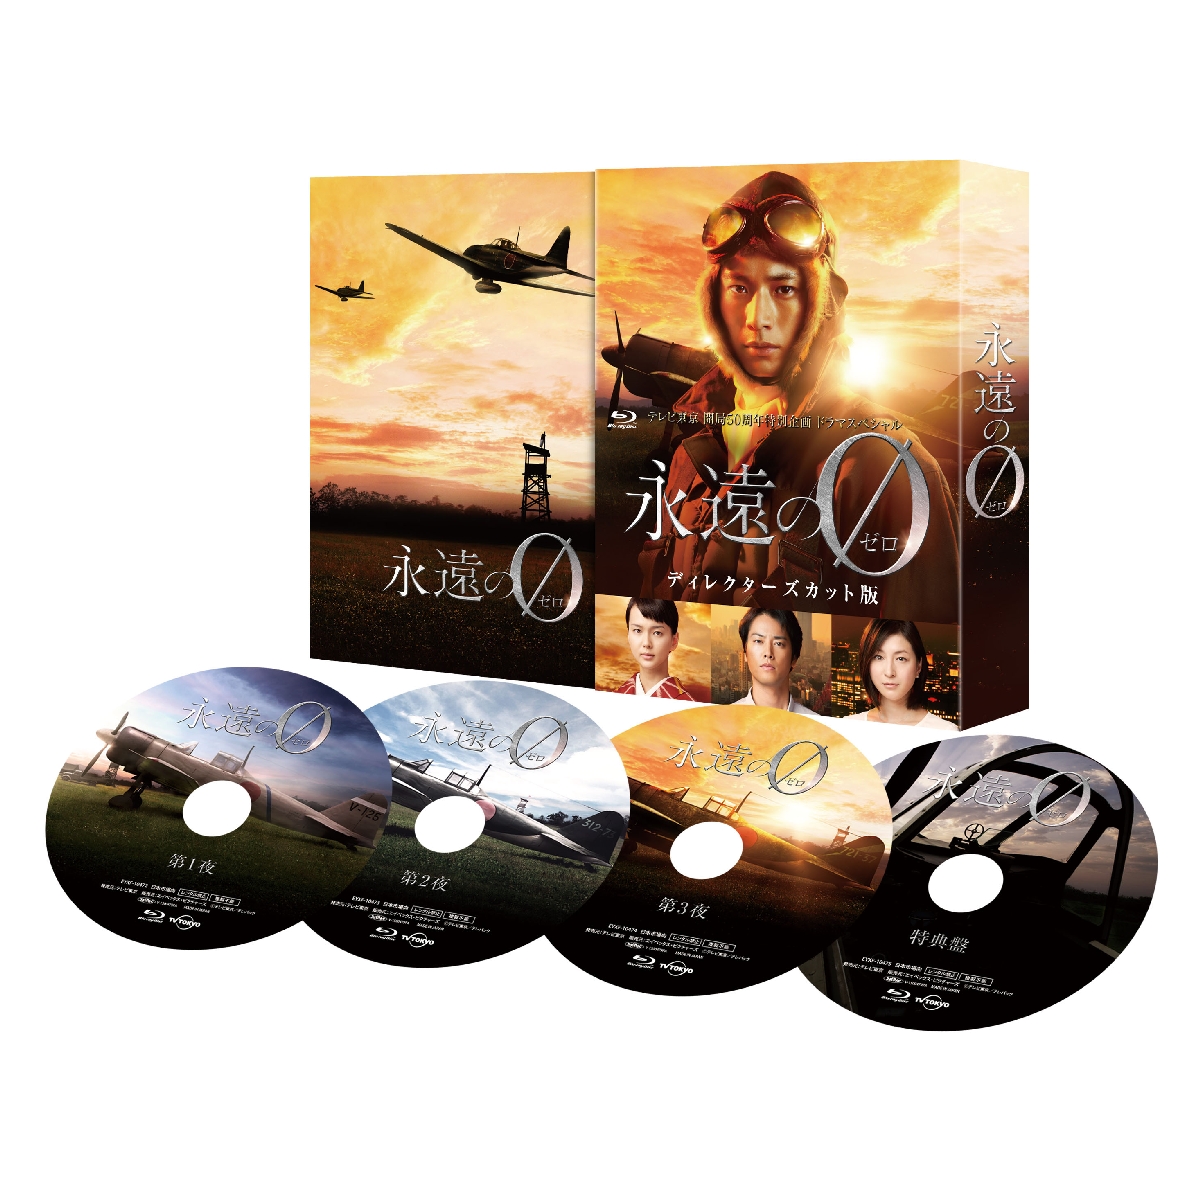 楽天ブックス: 「永遠の0」 ディレクターズカット版 DVD-BOX - 佐々木